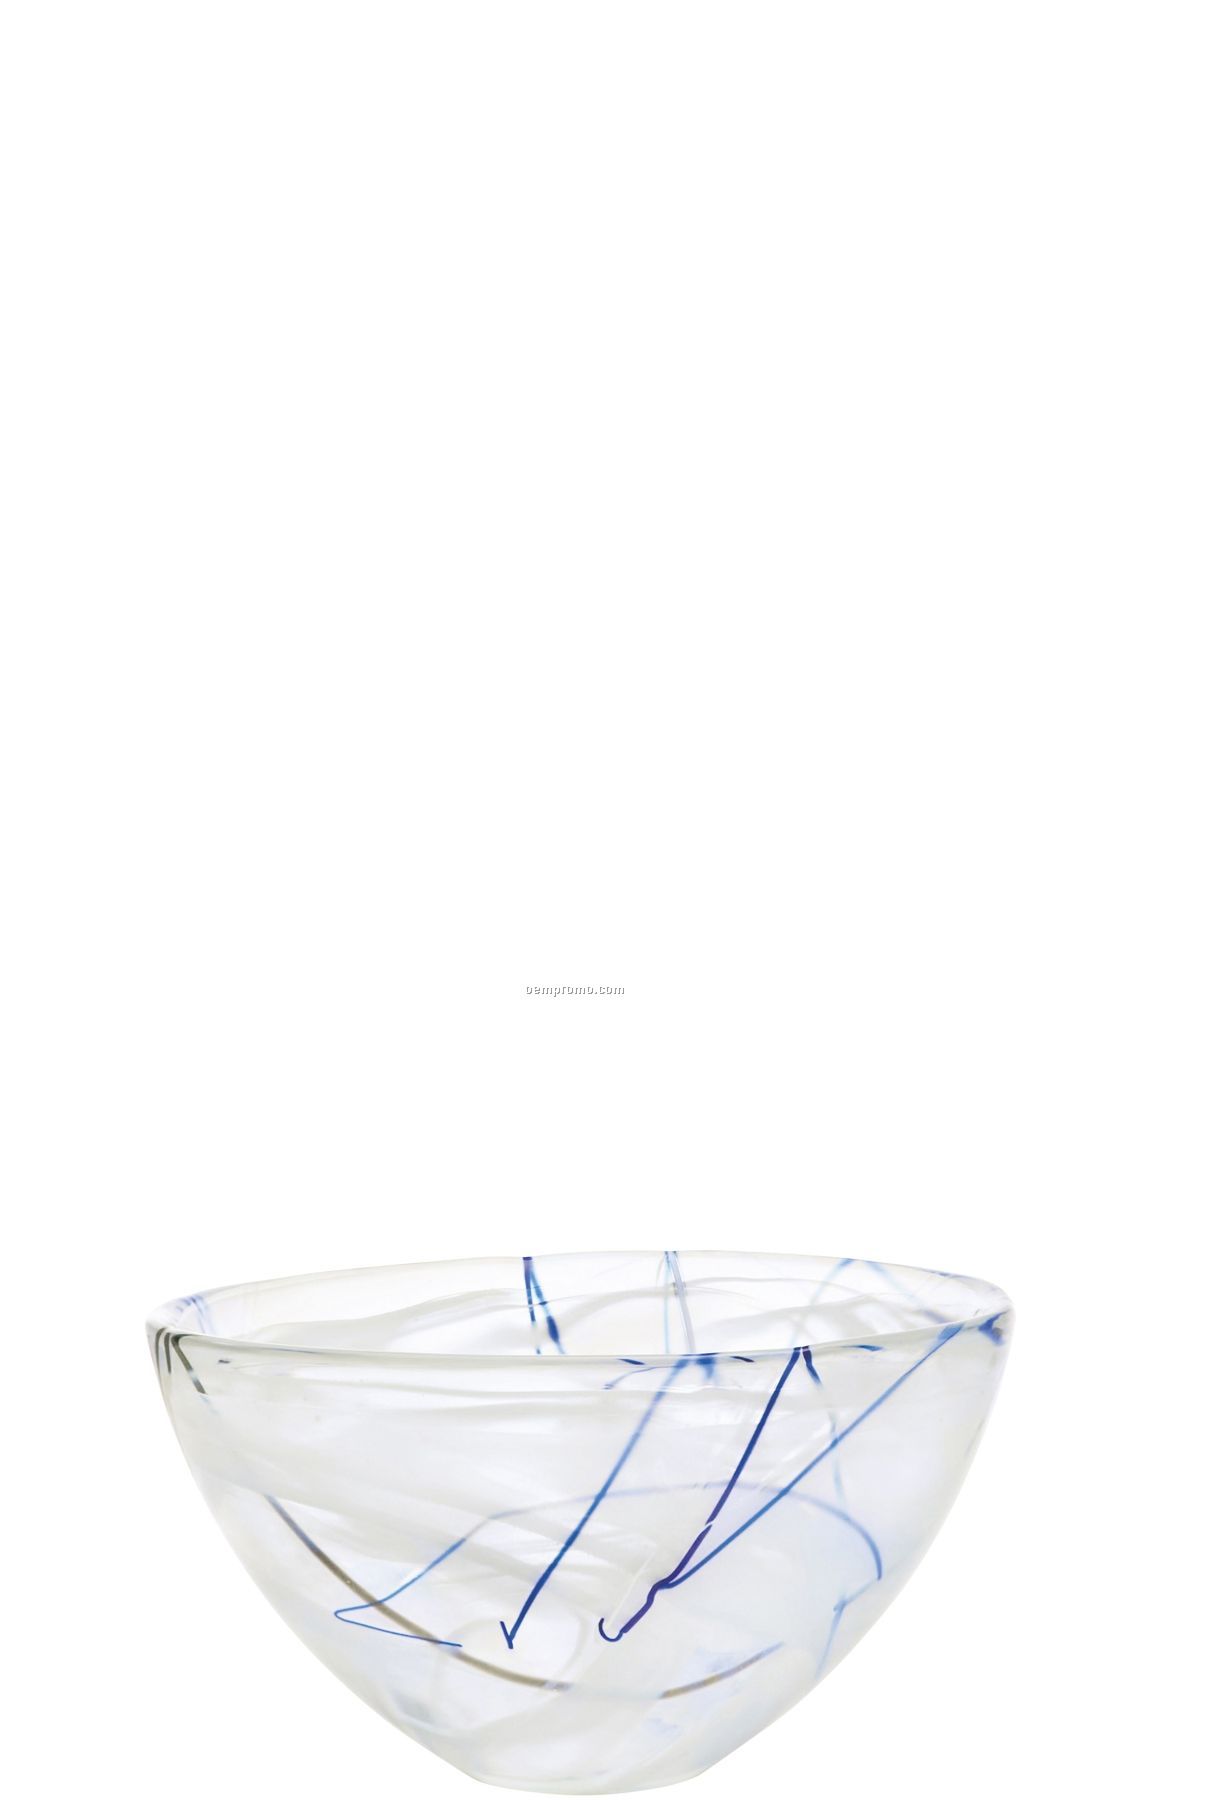 Contrast Medium Swirl Crystal Bowl By Anna Ehrner (White)